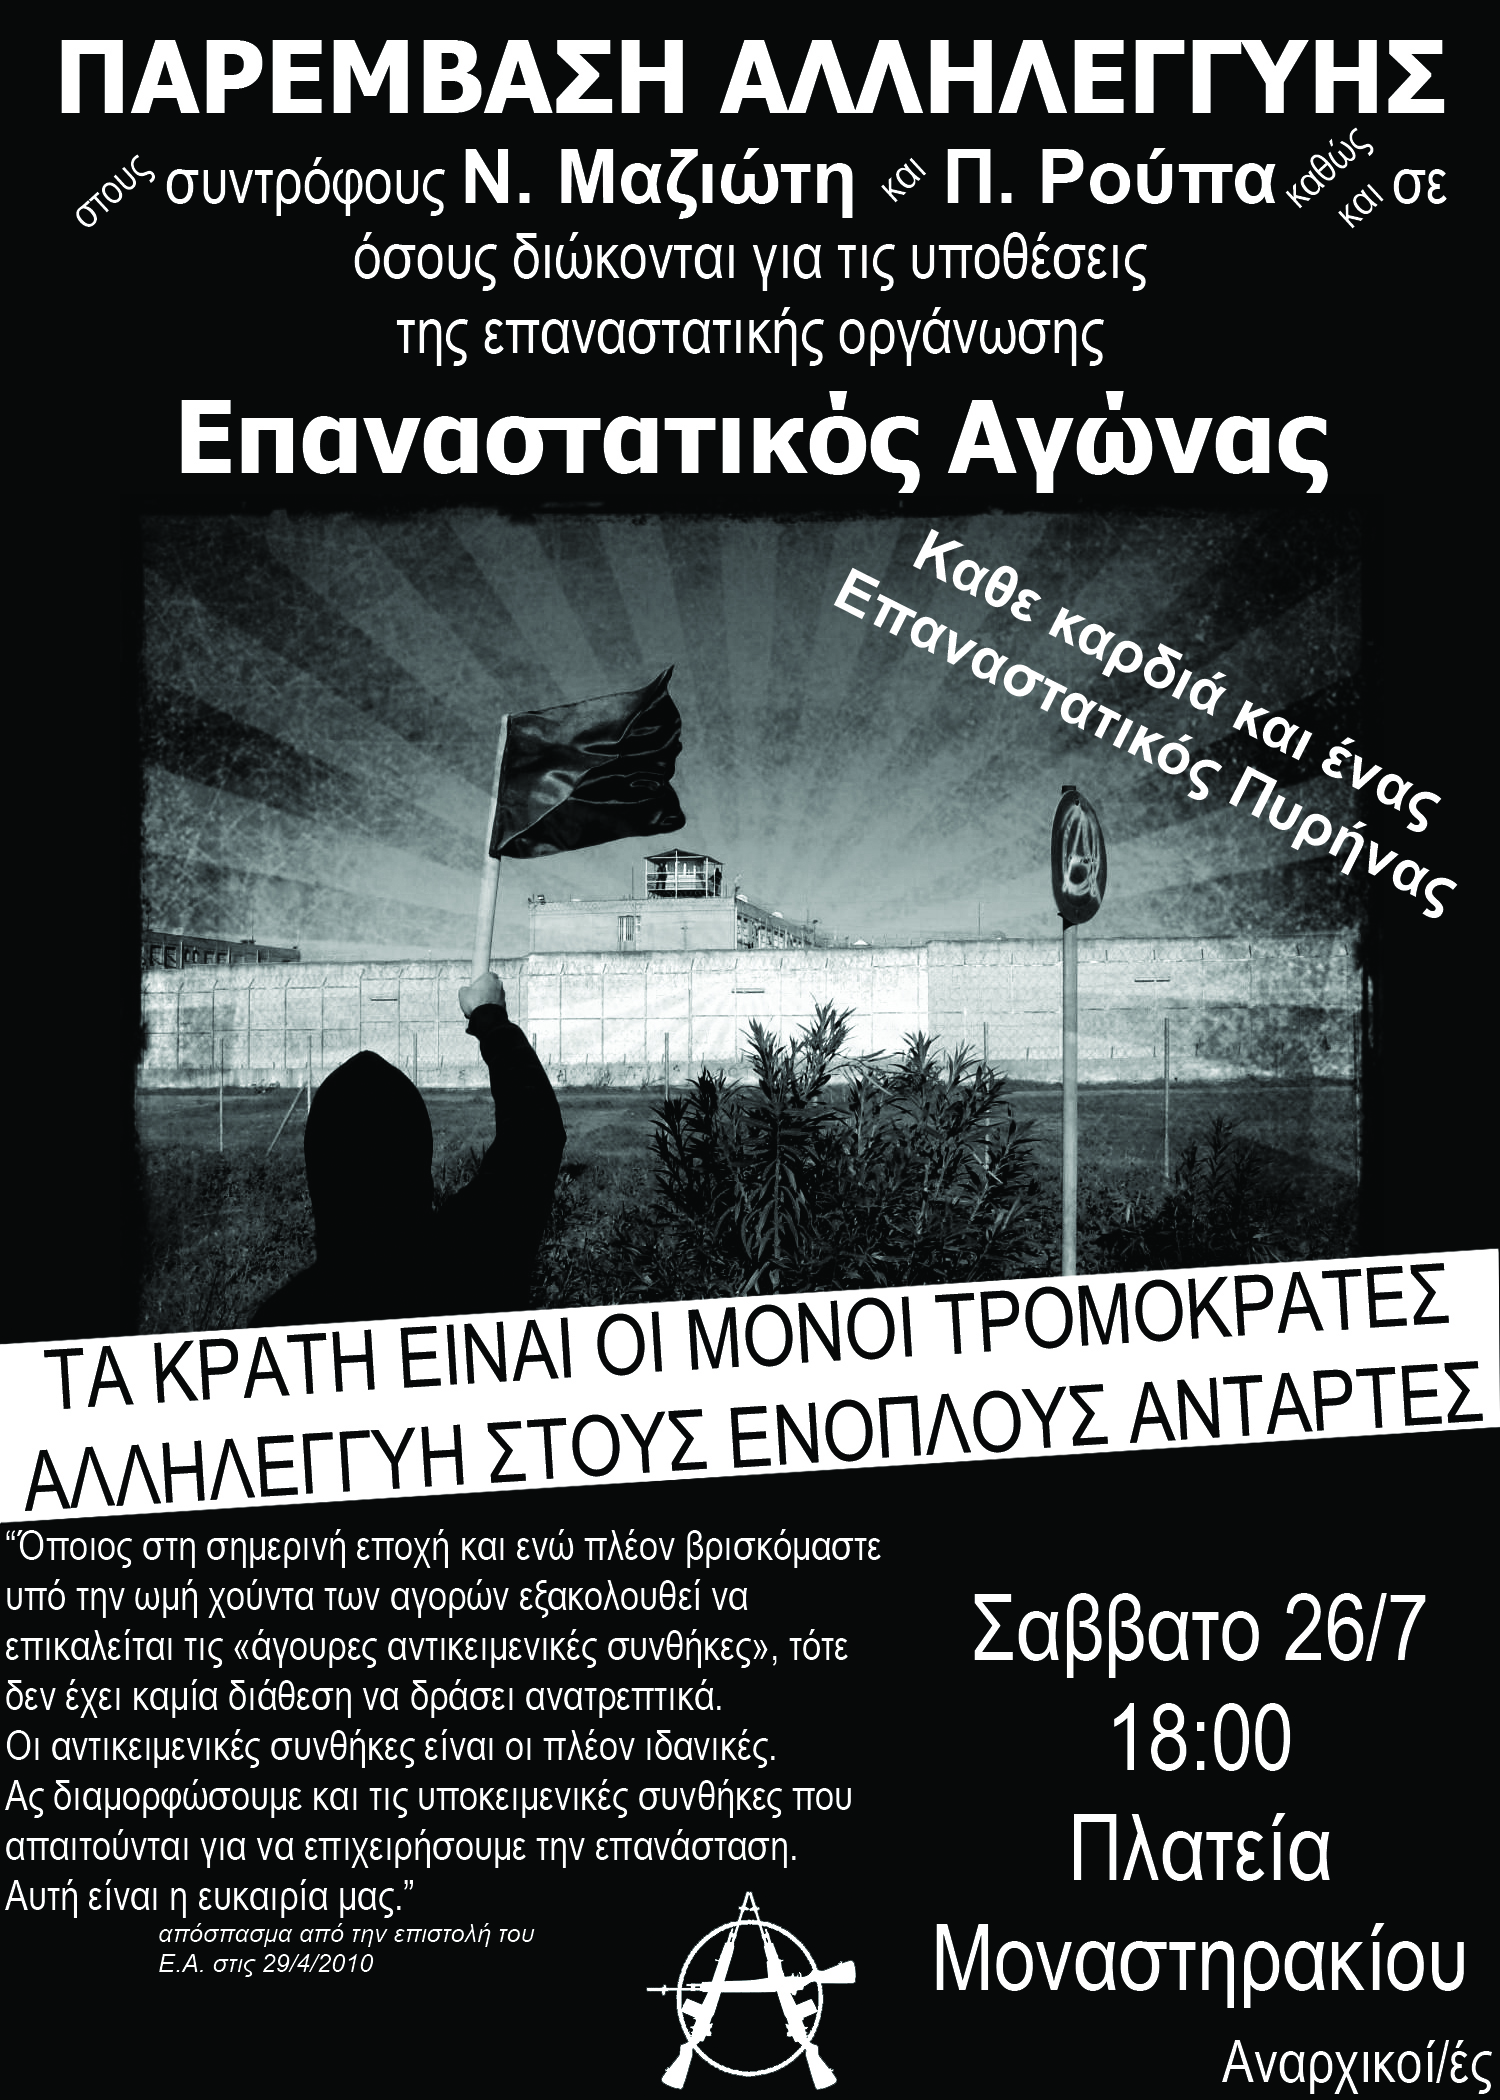 Αθήνα: Παρέμβαση αλληλεγγύης στους συντρόφους του Επαναστατικού Αγώνα [Σάββατο 26/07, 18:00]